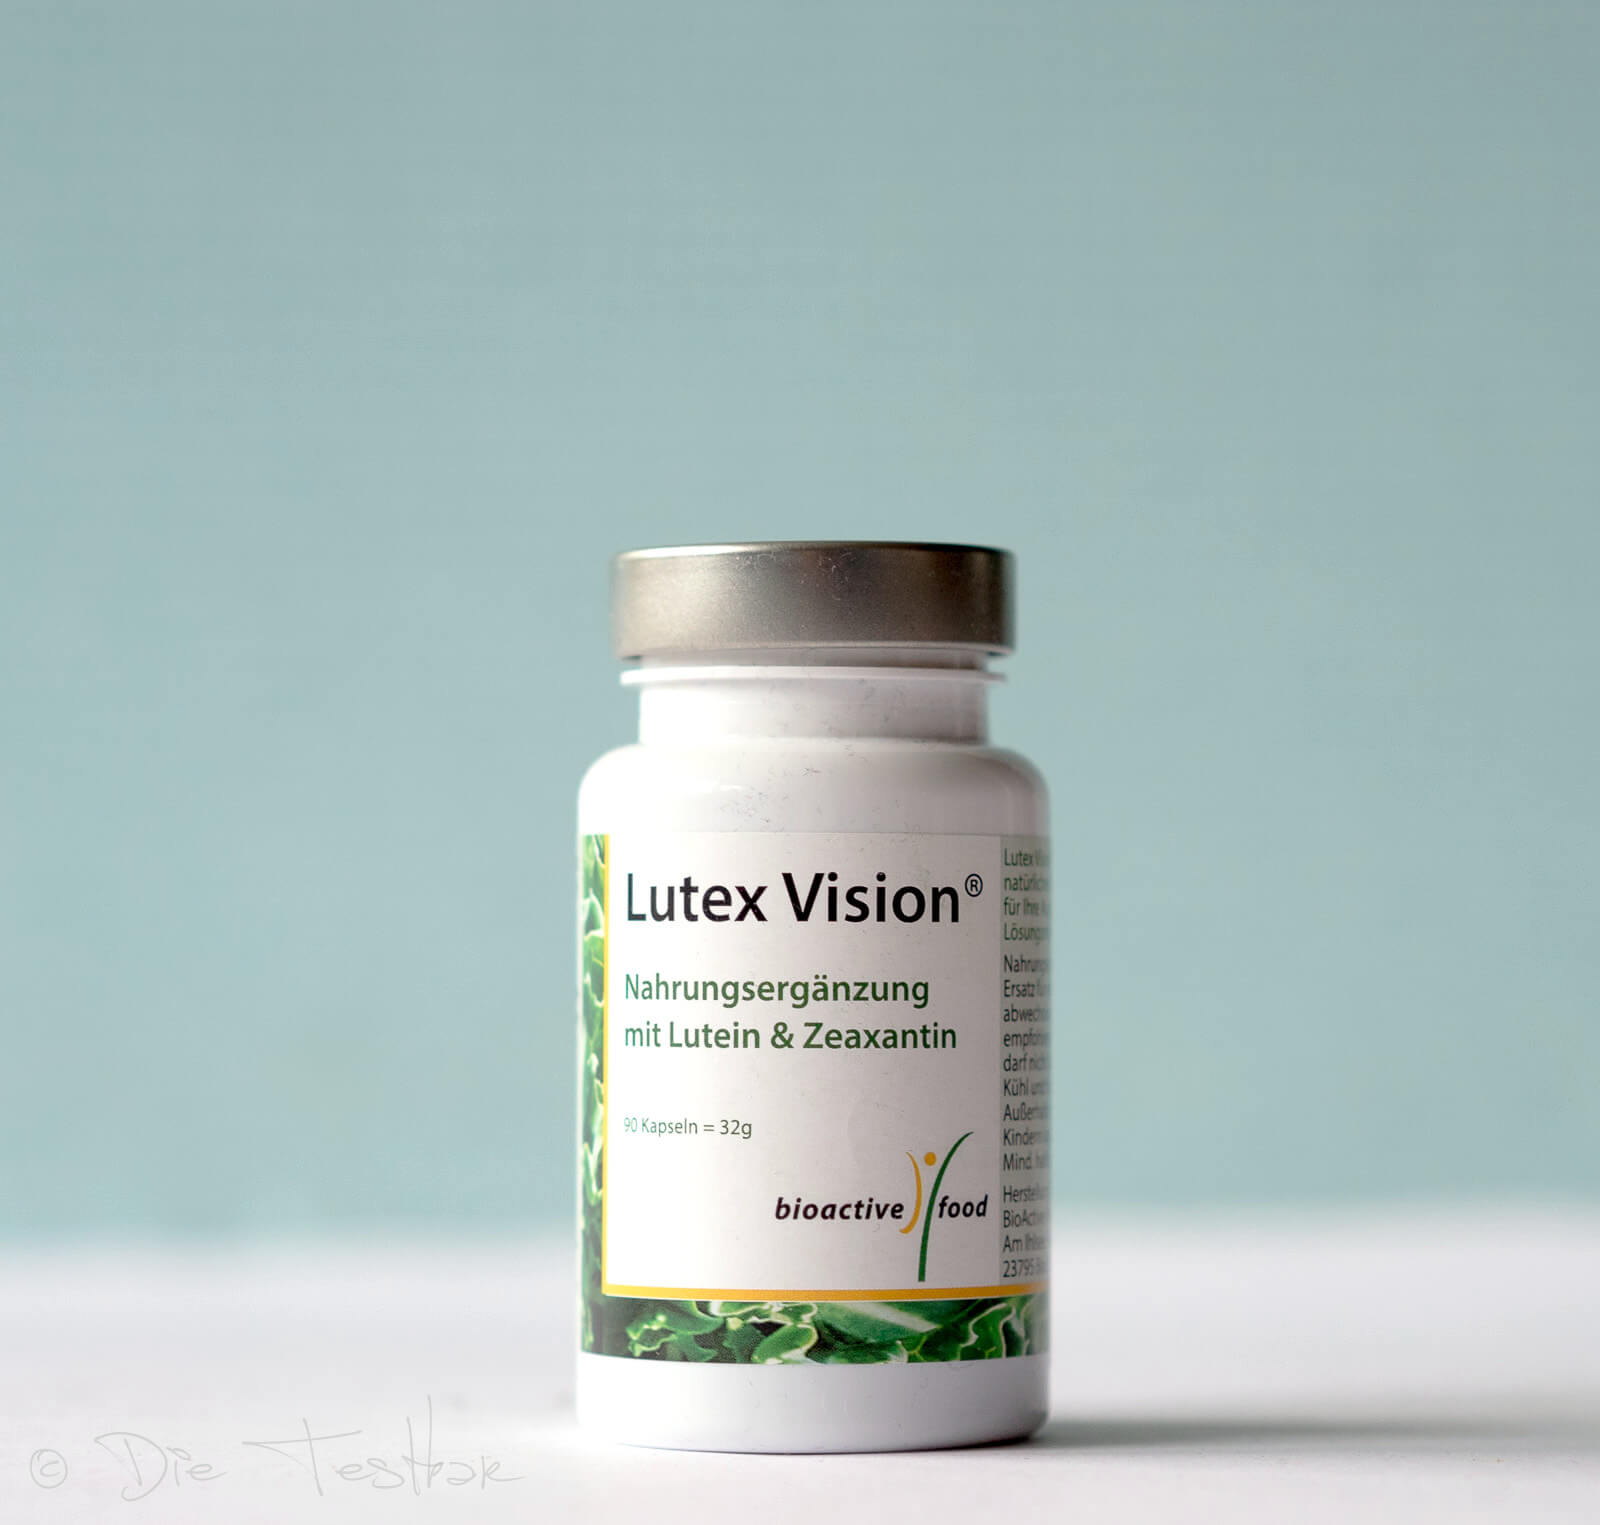 Lutex Vision - Augen & Sehen